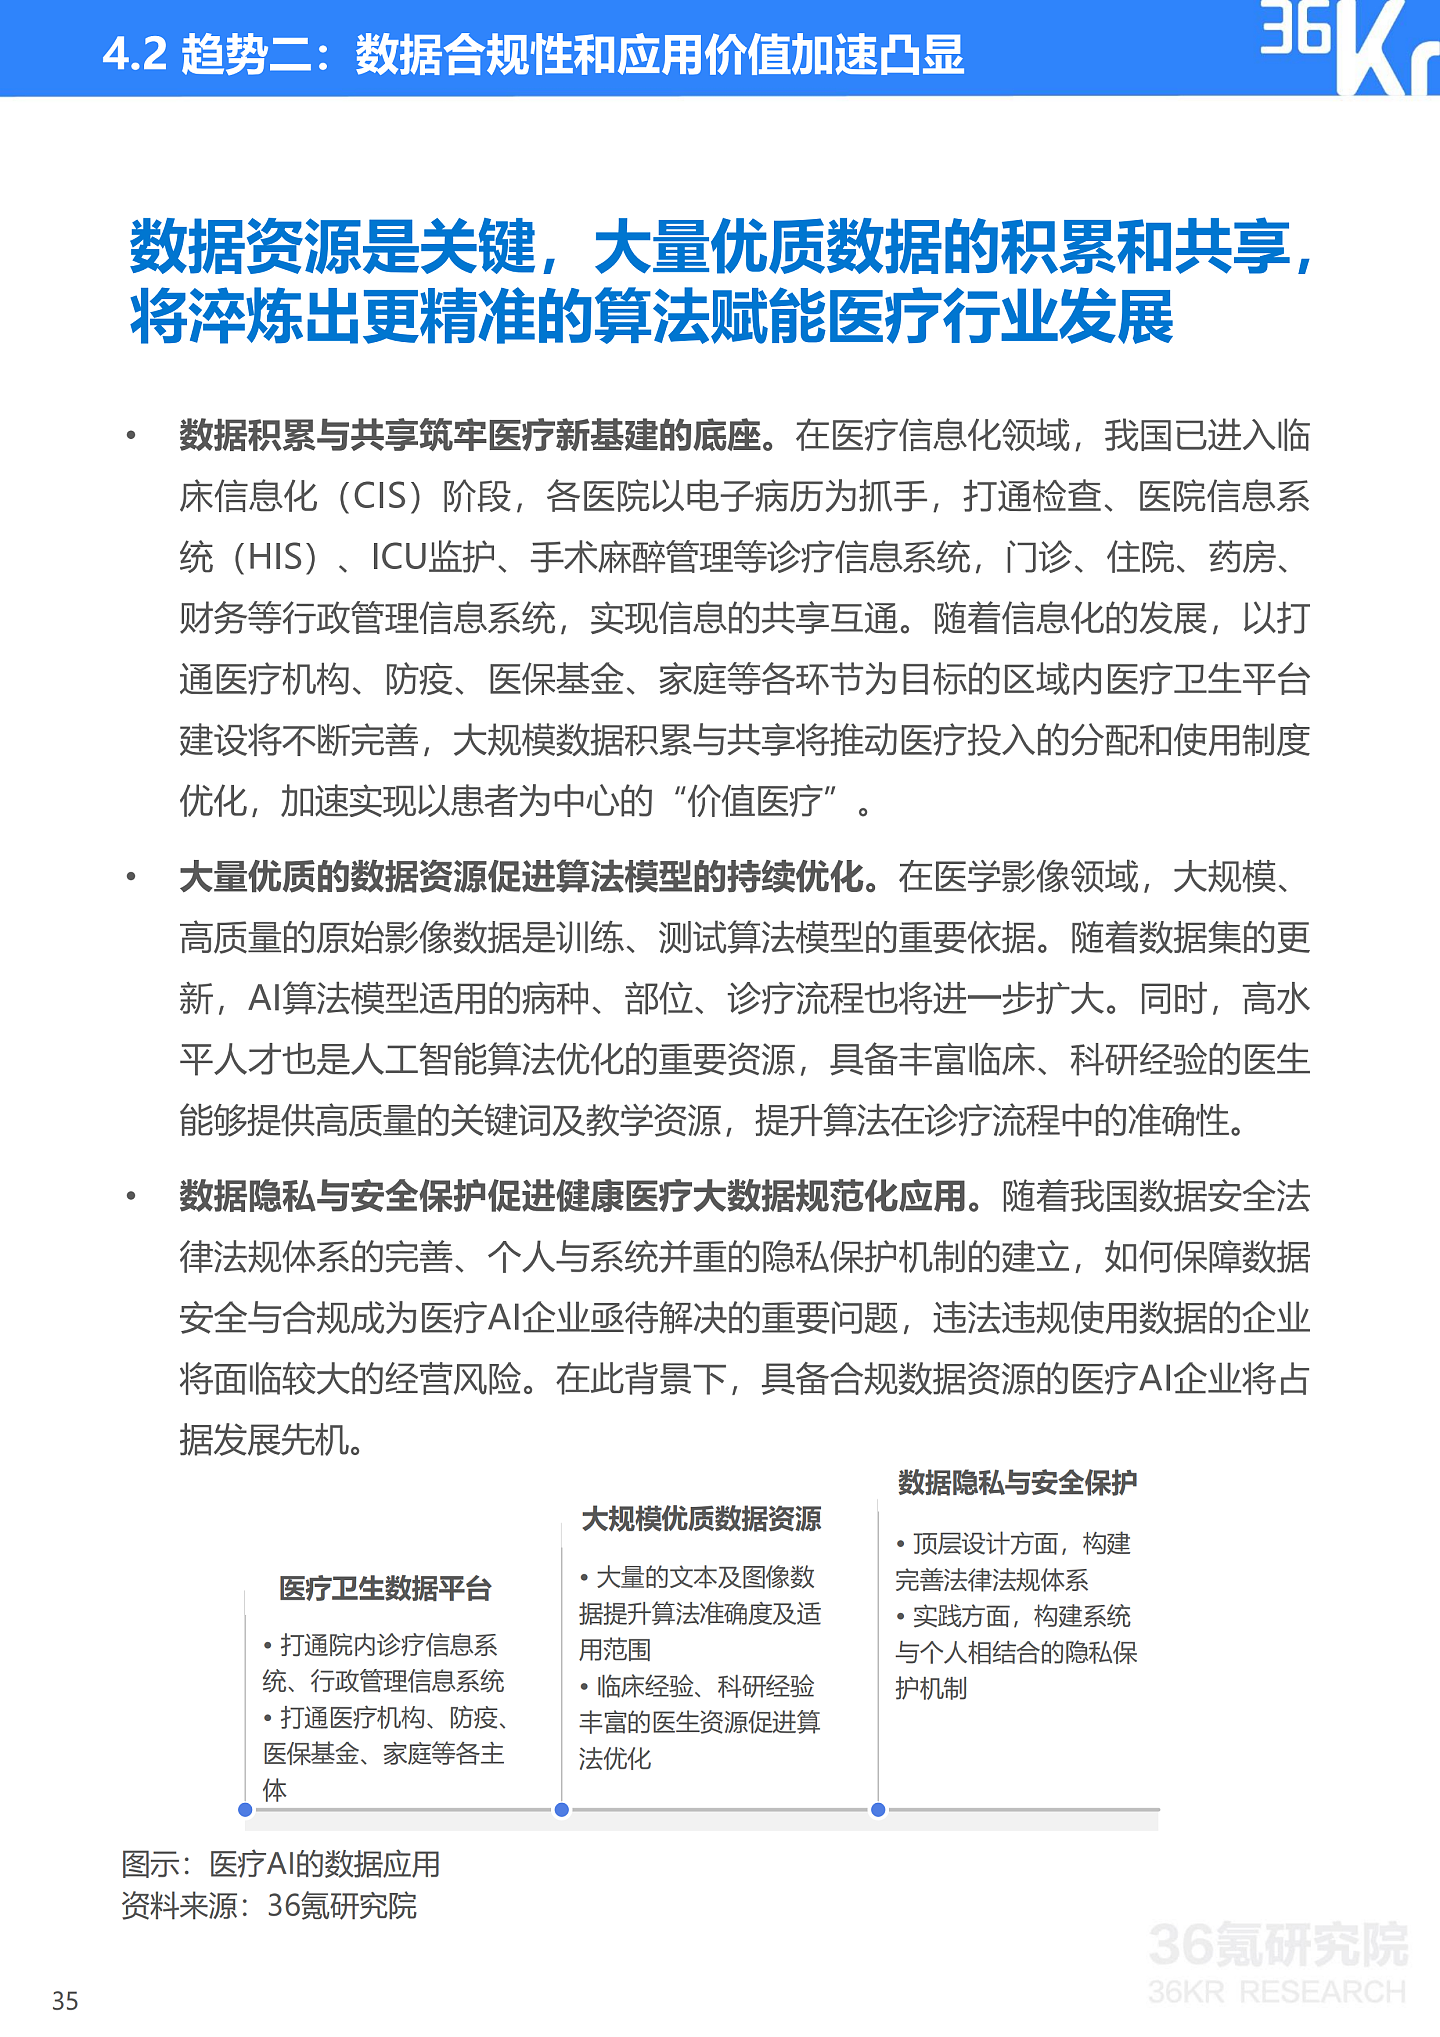 36氪研究院 | 2021年中国医疗AI行业研究报告 - 38